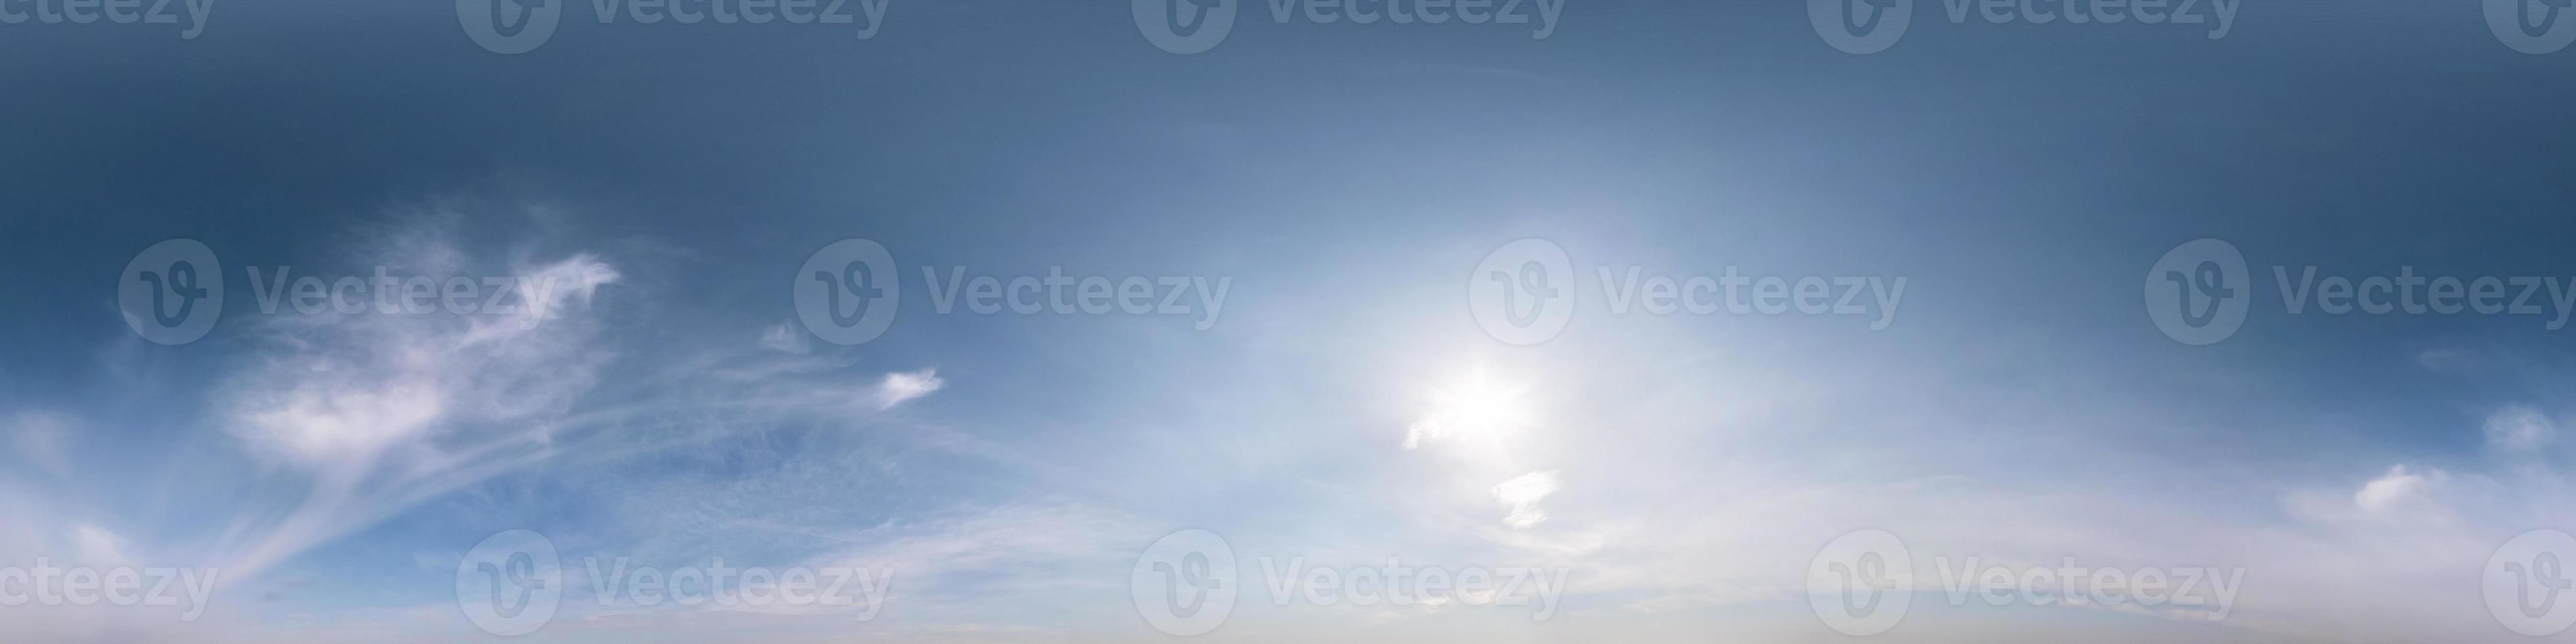 panorama hdri senza soluzione di continuità vista angolare a 360 gradi cielo blu con bellissime nuvole cumuliformi soffici con zenit per l'uso in grafica 3d o sviluppo di giochi come sky dome o modifica riprese con drone foto